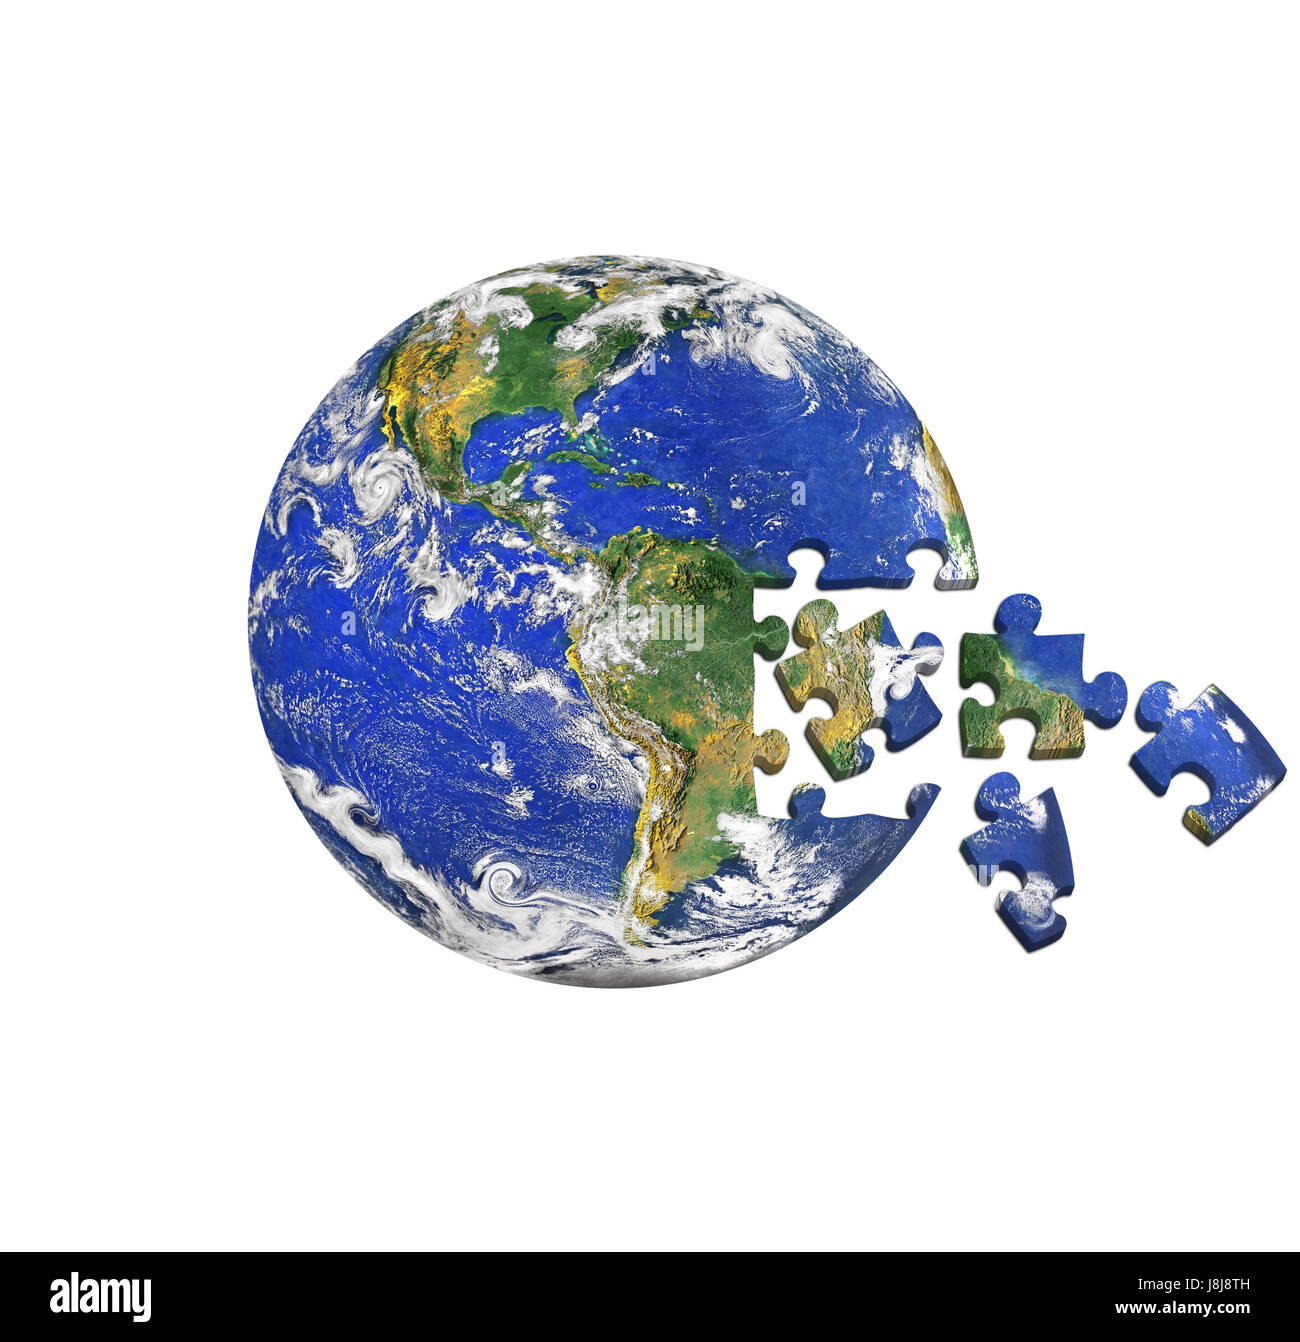 Drop, mundo, planeta, tierra, mundo, Jigsaw, puzzle, rompecabezas, global,  la lágrima Fotografía de stock - Alamy